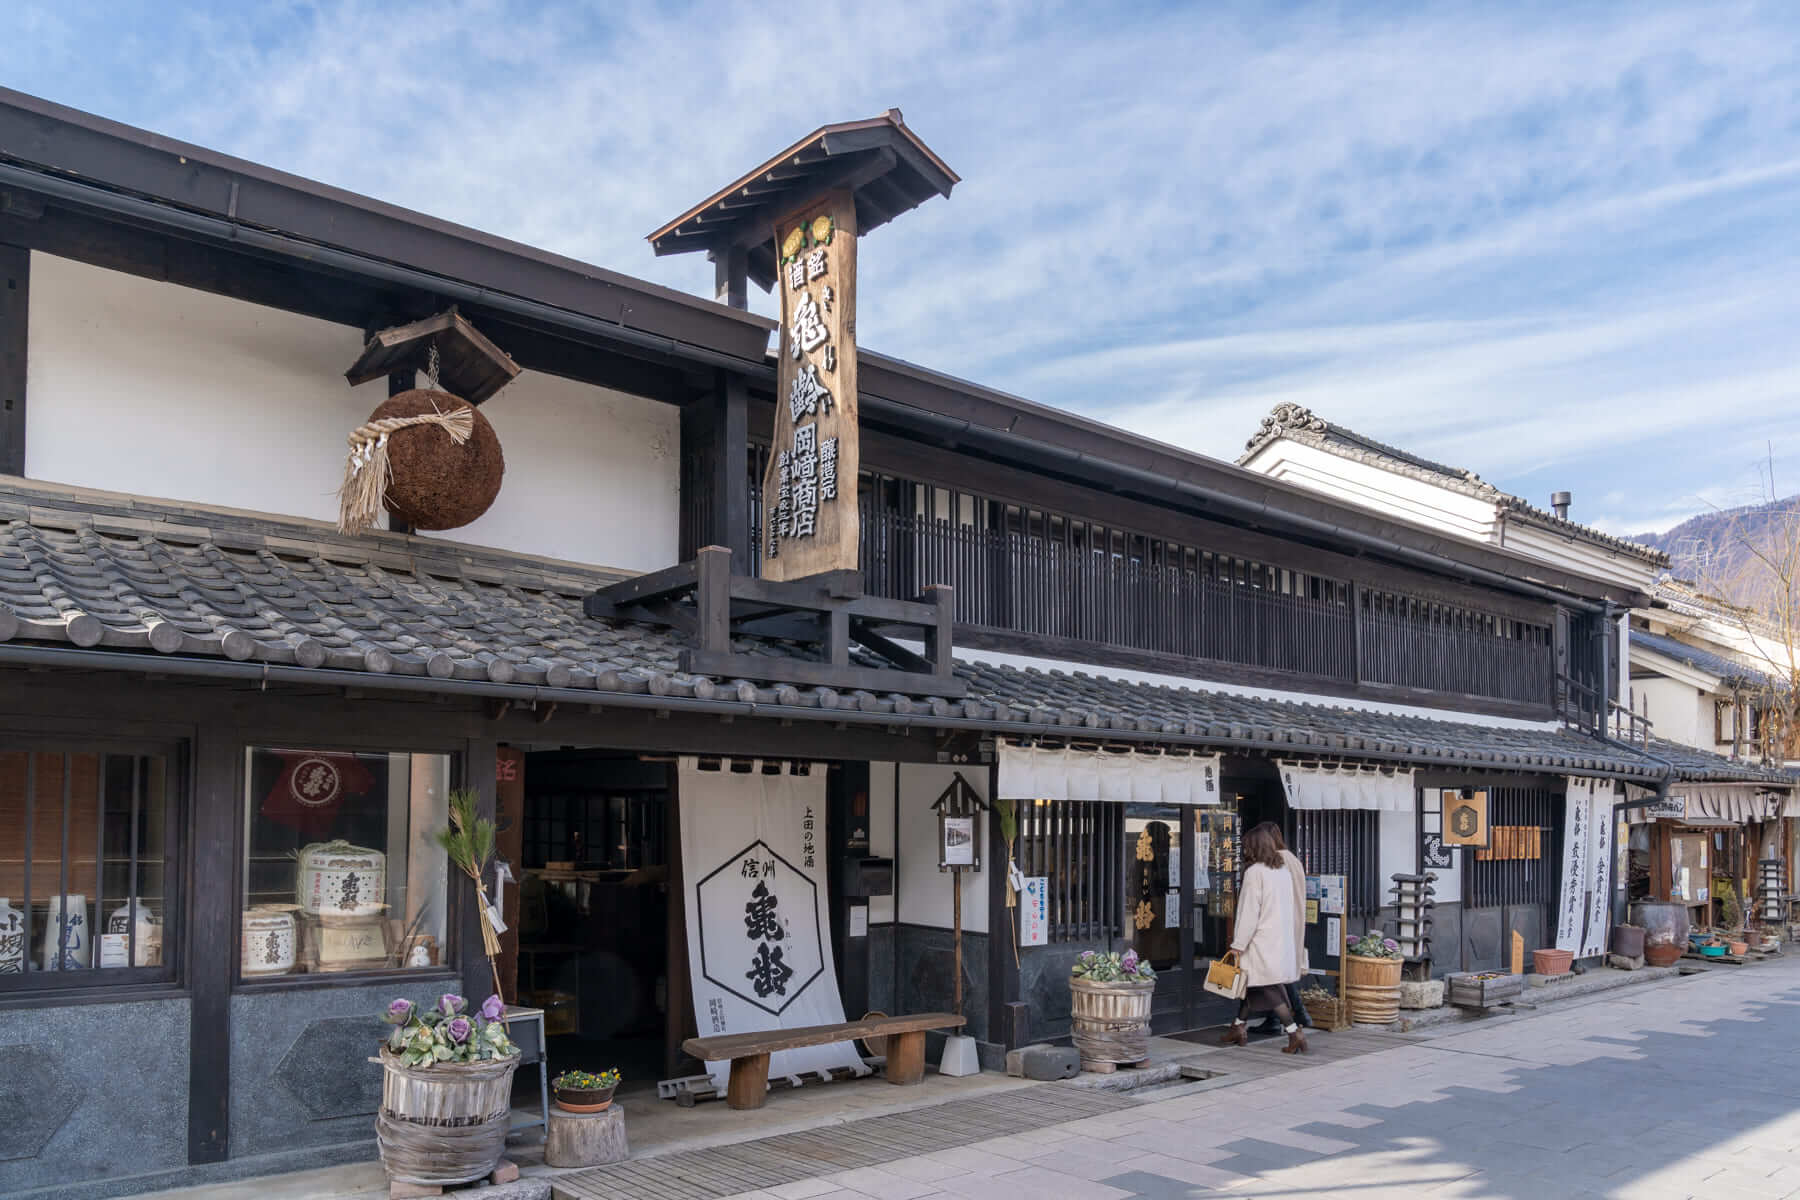 Traditions & Tastes of Ueda